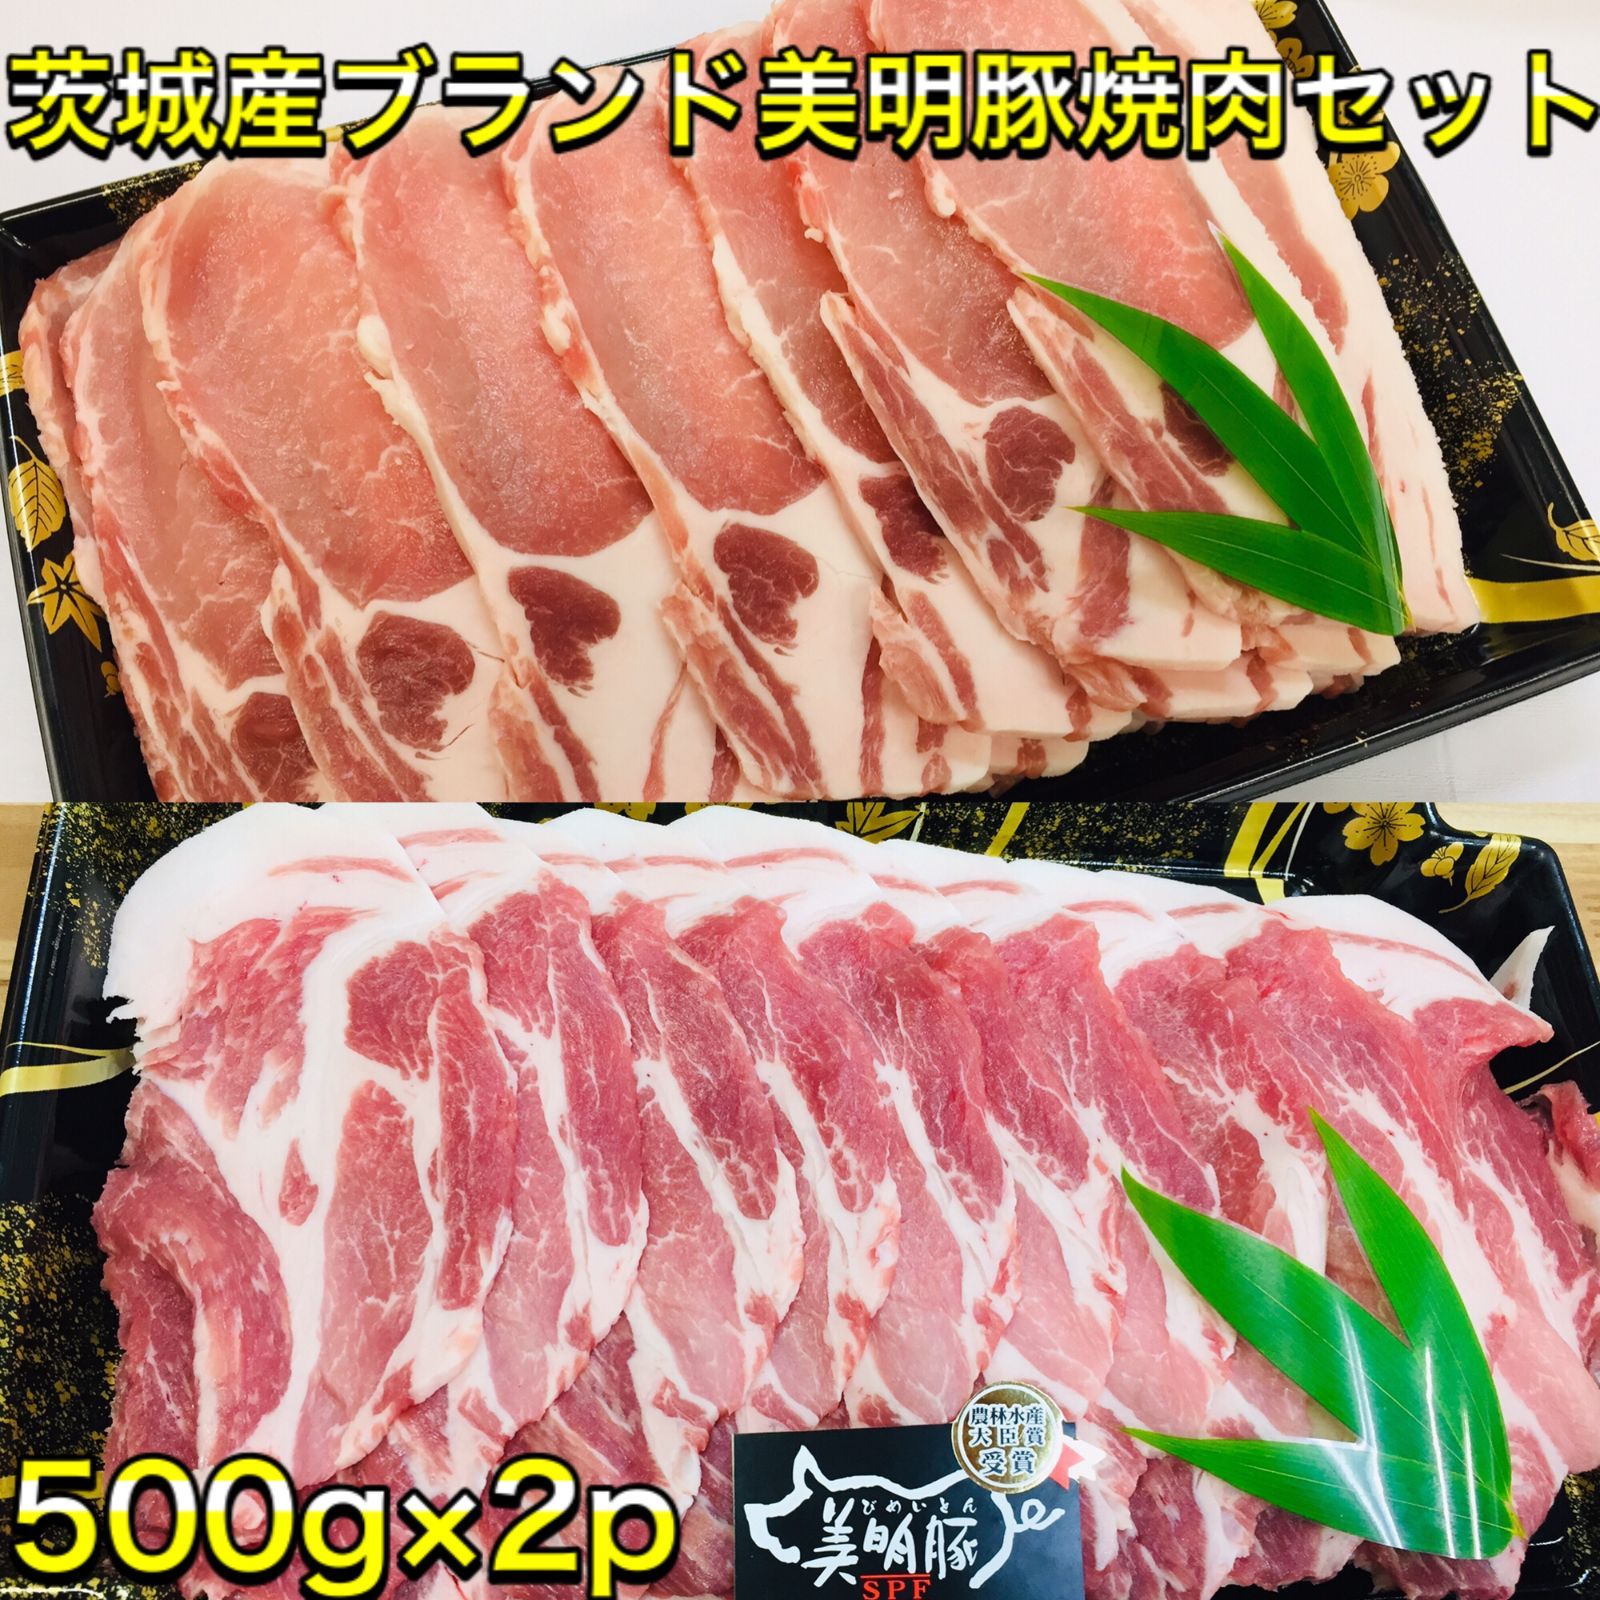 茨城県産 常陸牛\u0026美明豚手づくり特選ハンバーグ(約200g×8個